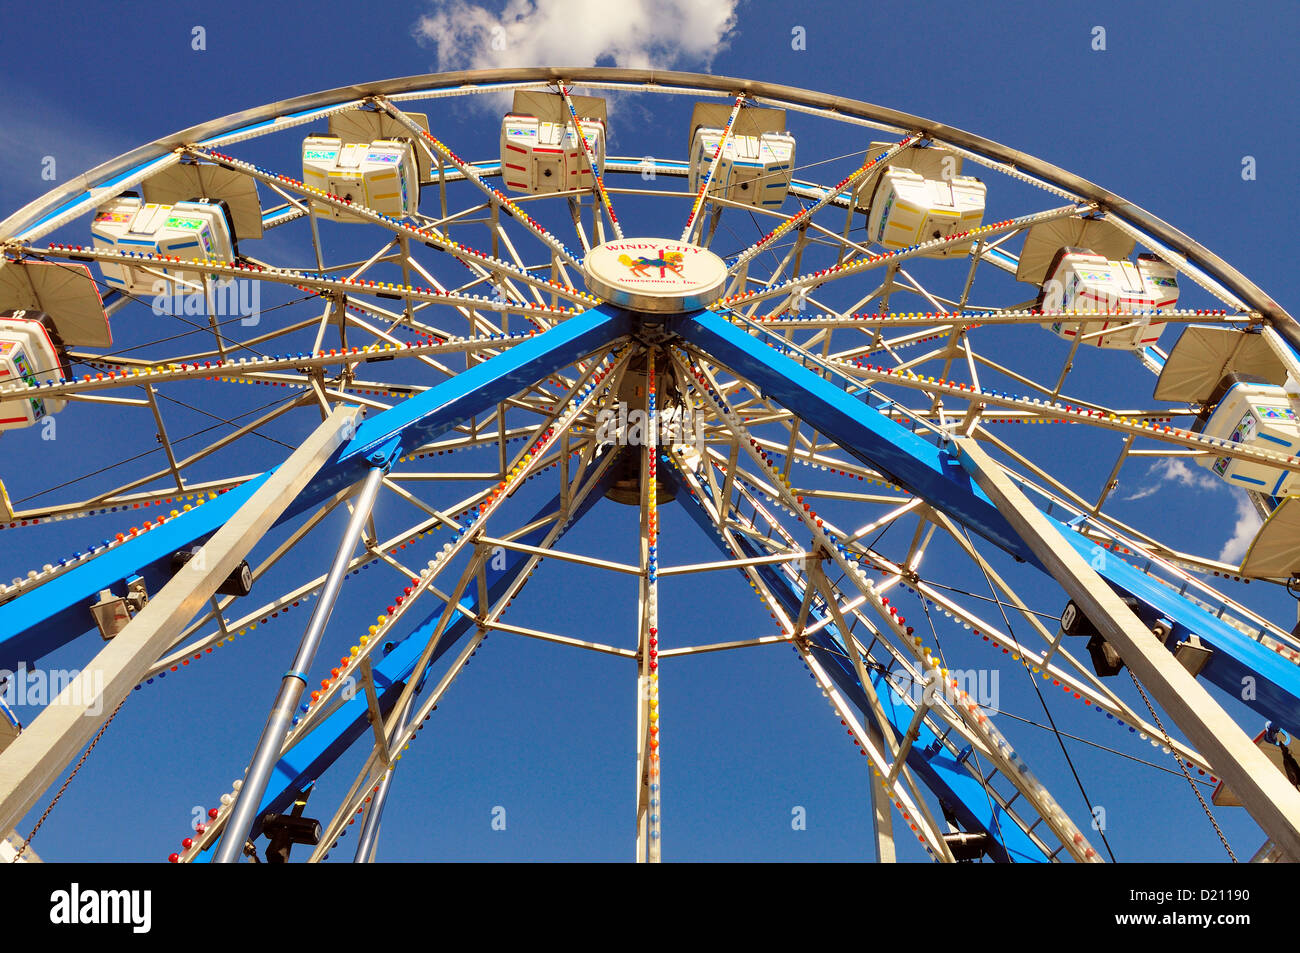 Ferris wheel summer community fair Illinois, USA. Stock Photo